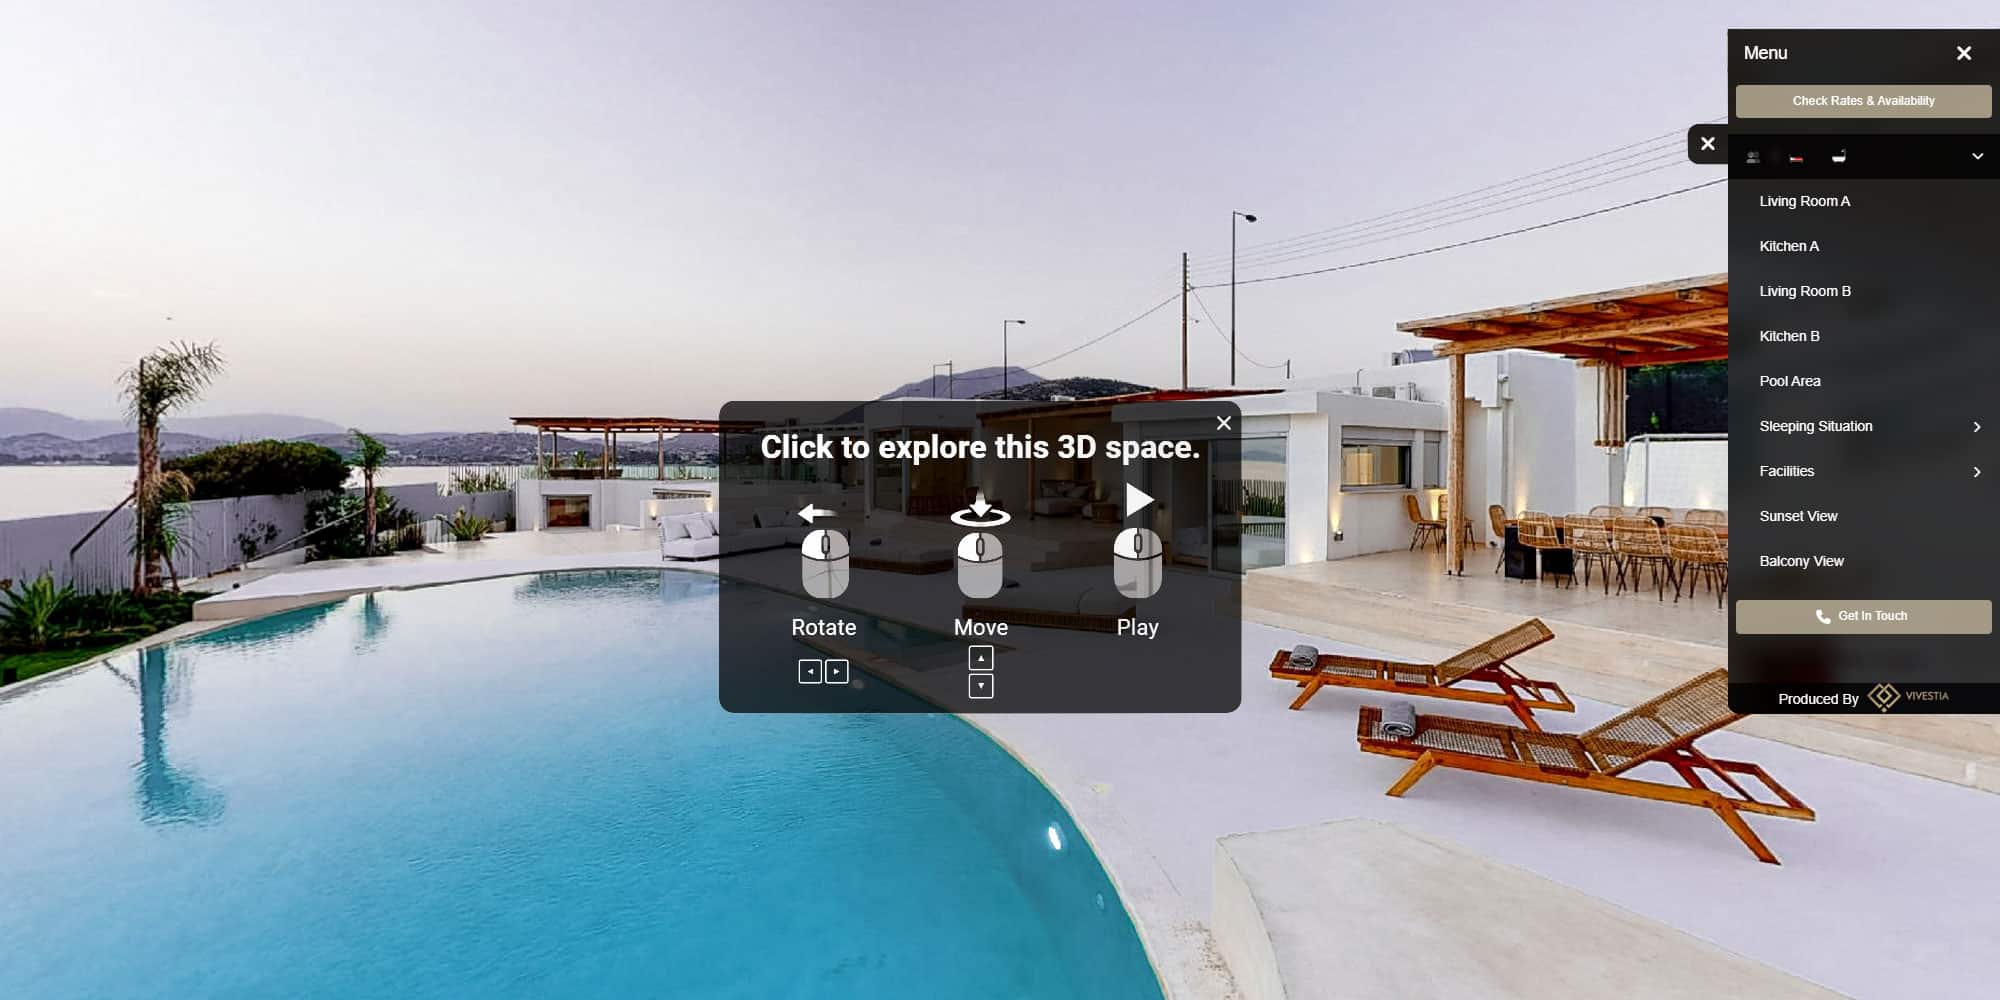 Προβολή βίλας με εικονική περιήγηση: Τι προσφέρει;-Vivestia | Risk-Free Villas, Hotels and Cruises in VR